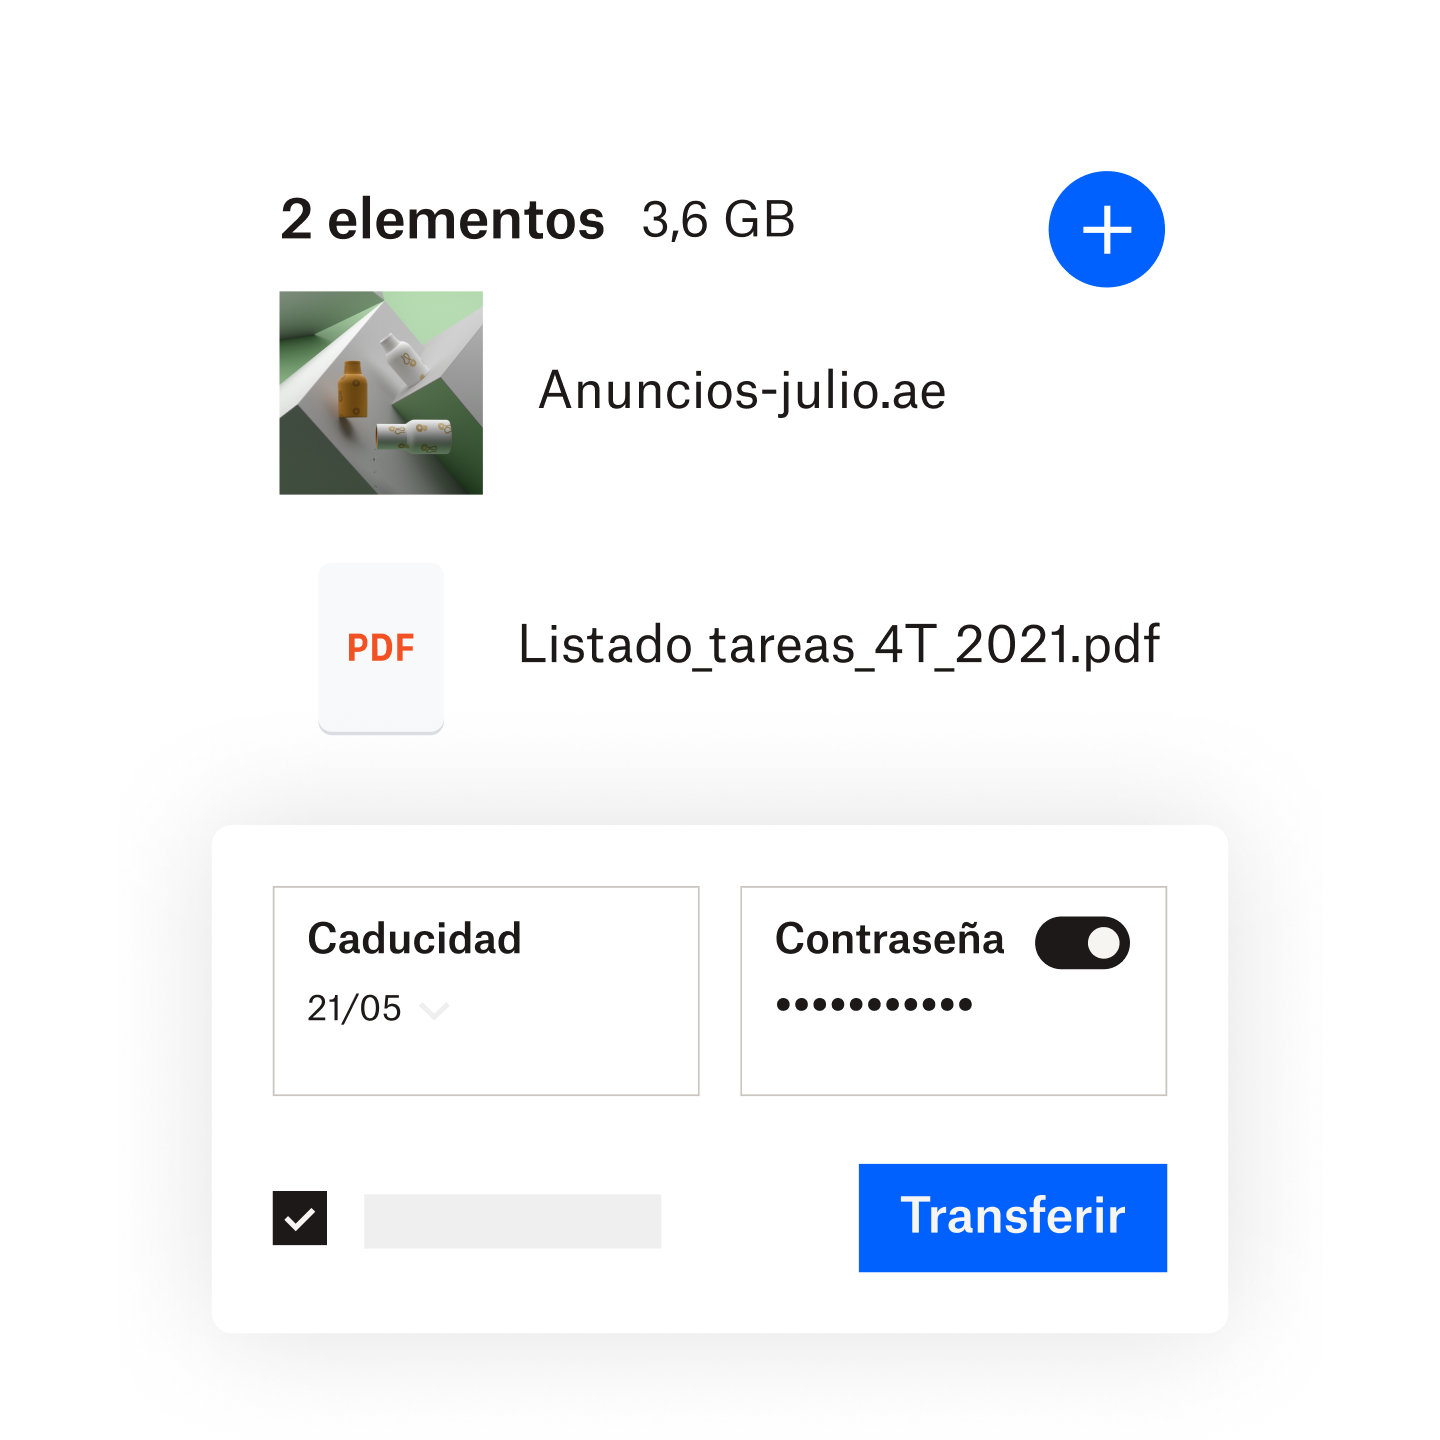 Un usuario añade una contraseña y una fecha de vencimiento a un archivo compartido a través de Dropbox Transfer